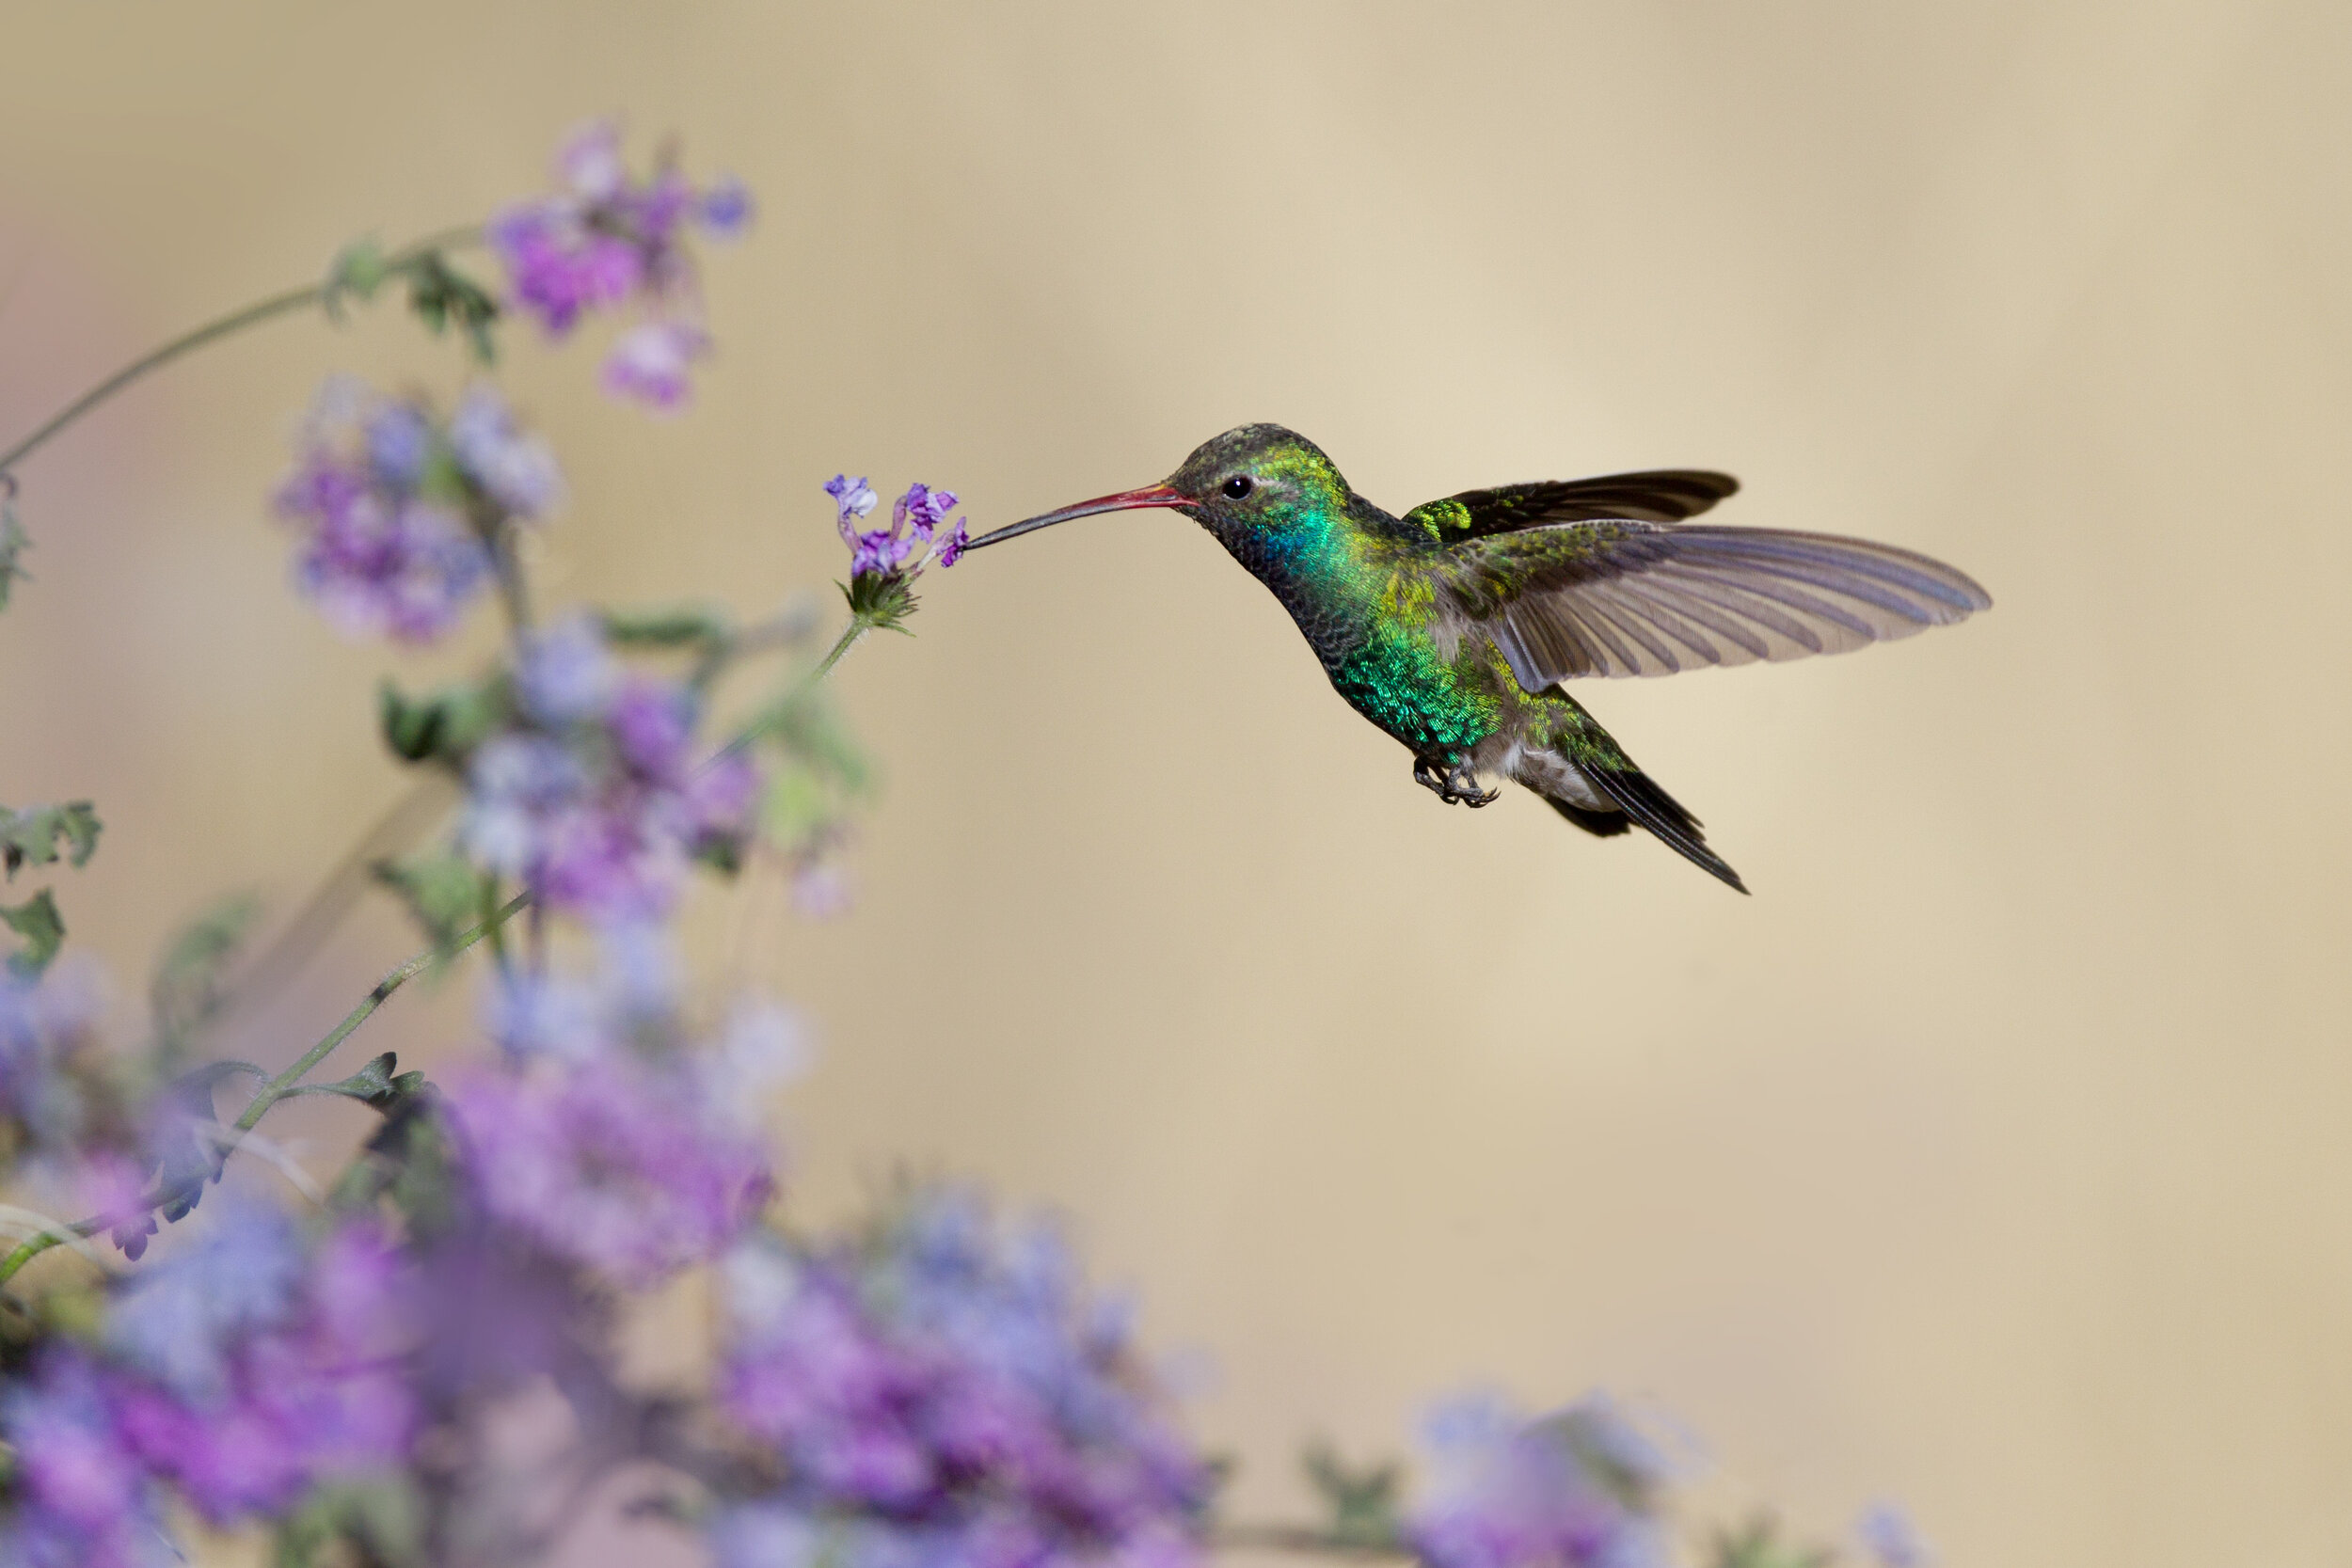 broad-billed_hummingbird_00420189b.jpg